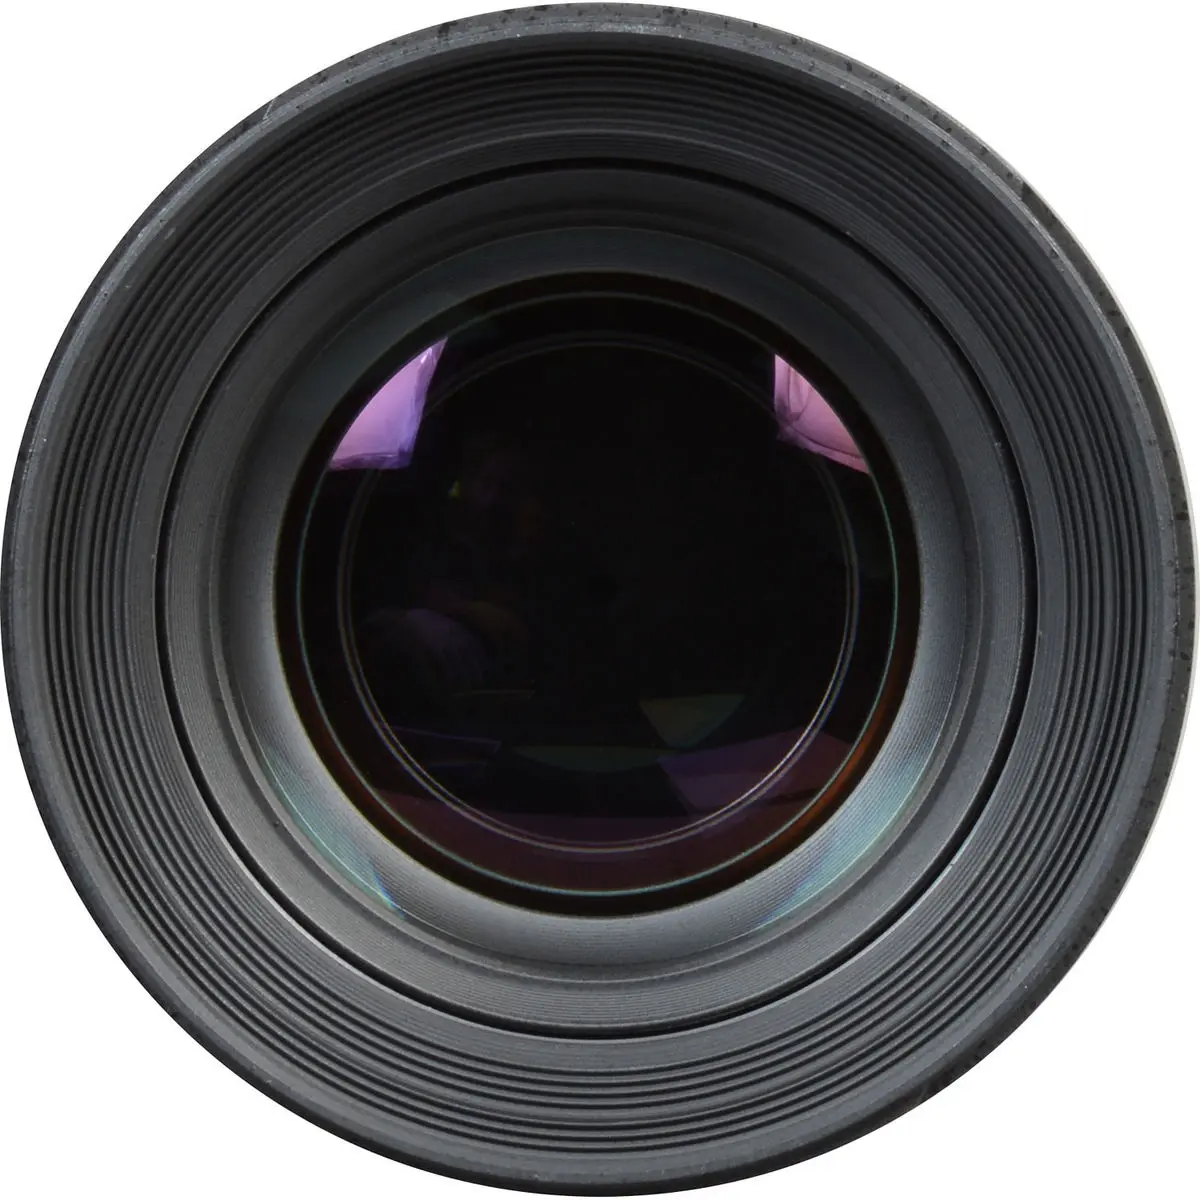 3. Samyang 50 mm f/1.4 AS UMC (Sony E) Lens